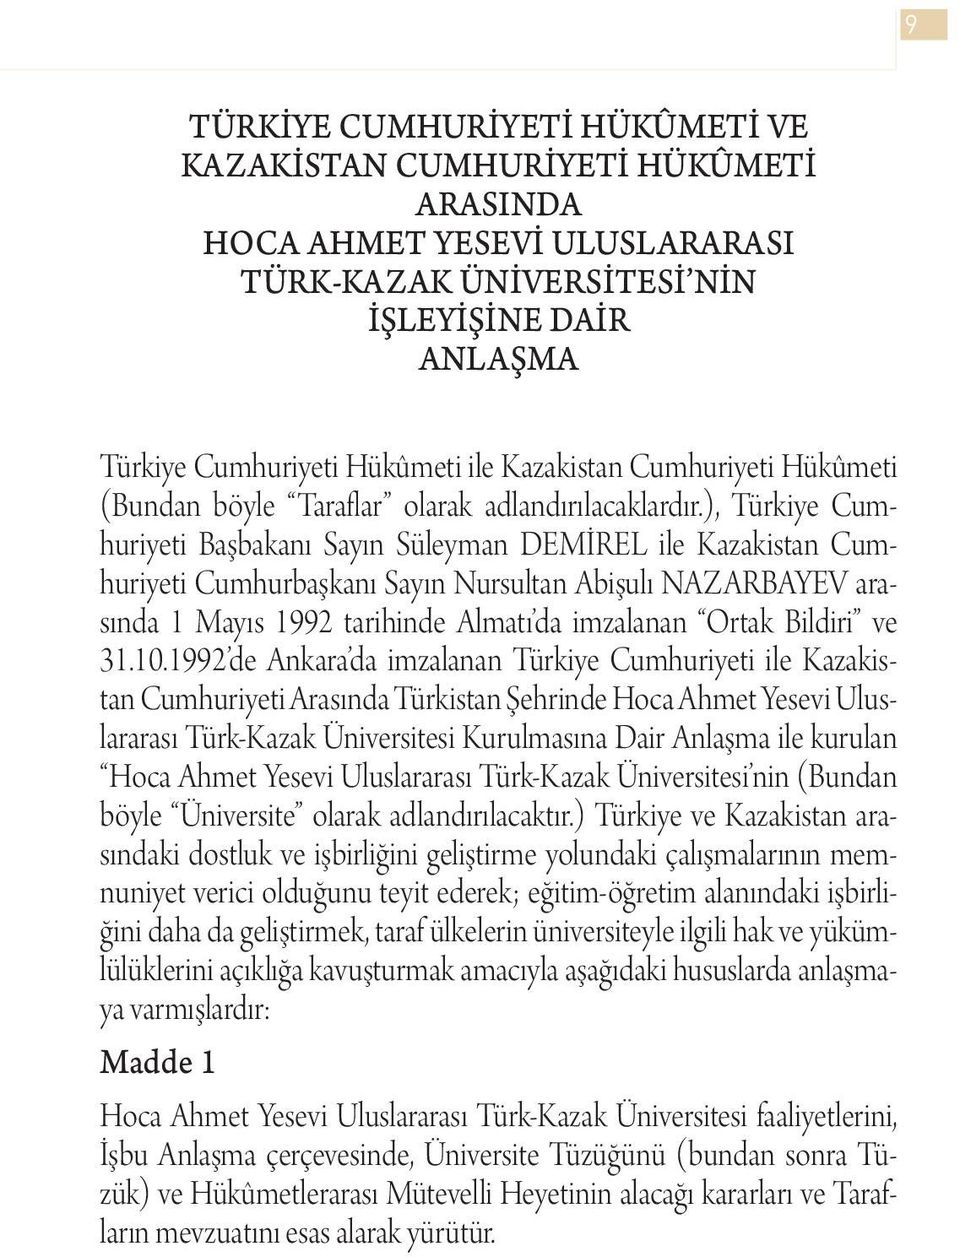 ), Türkiye Cumhuriyeti Başbakanı Sayın Süleyman DEMİREL ile Kazakistan Cumhuriyeti Cumhurbaşkanı Sayın Nursultan Abişulı NAZARBAYEV arasında 1 Mayıs 1992 tarihinde Almatı da imzalanan Ortak Bildiri